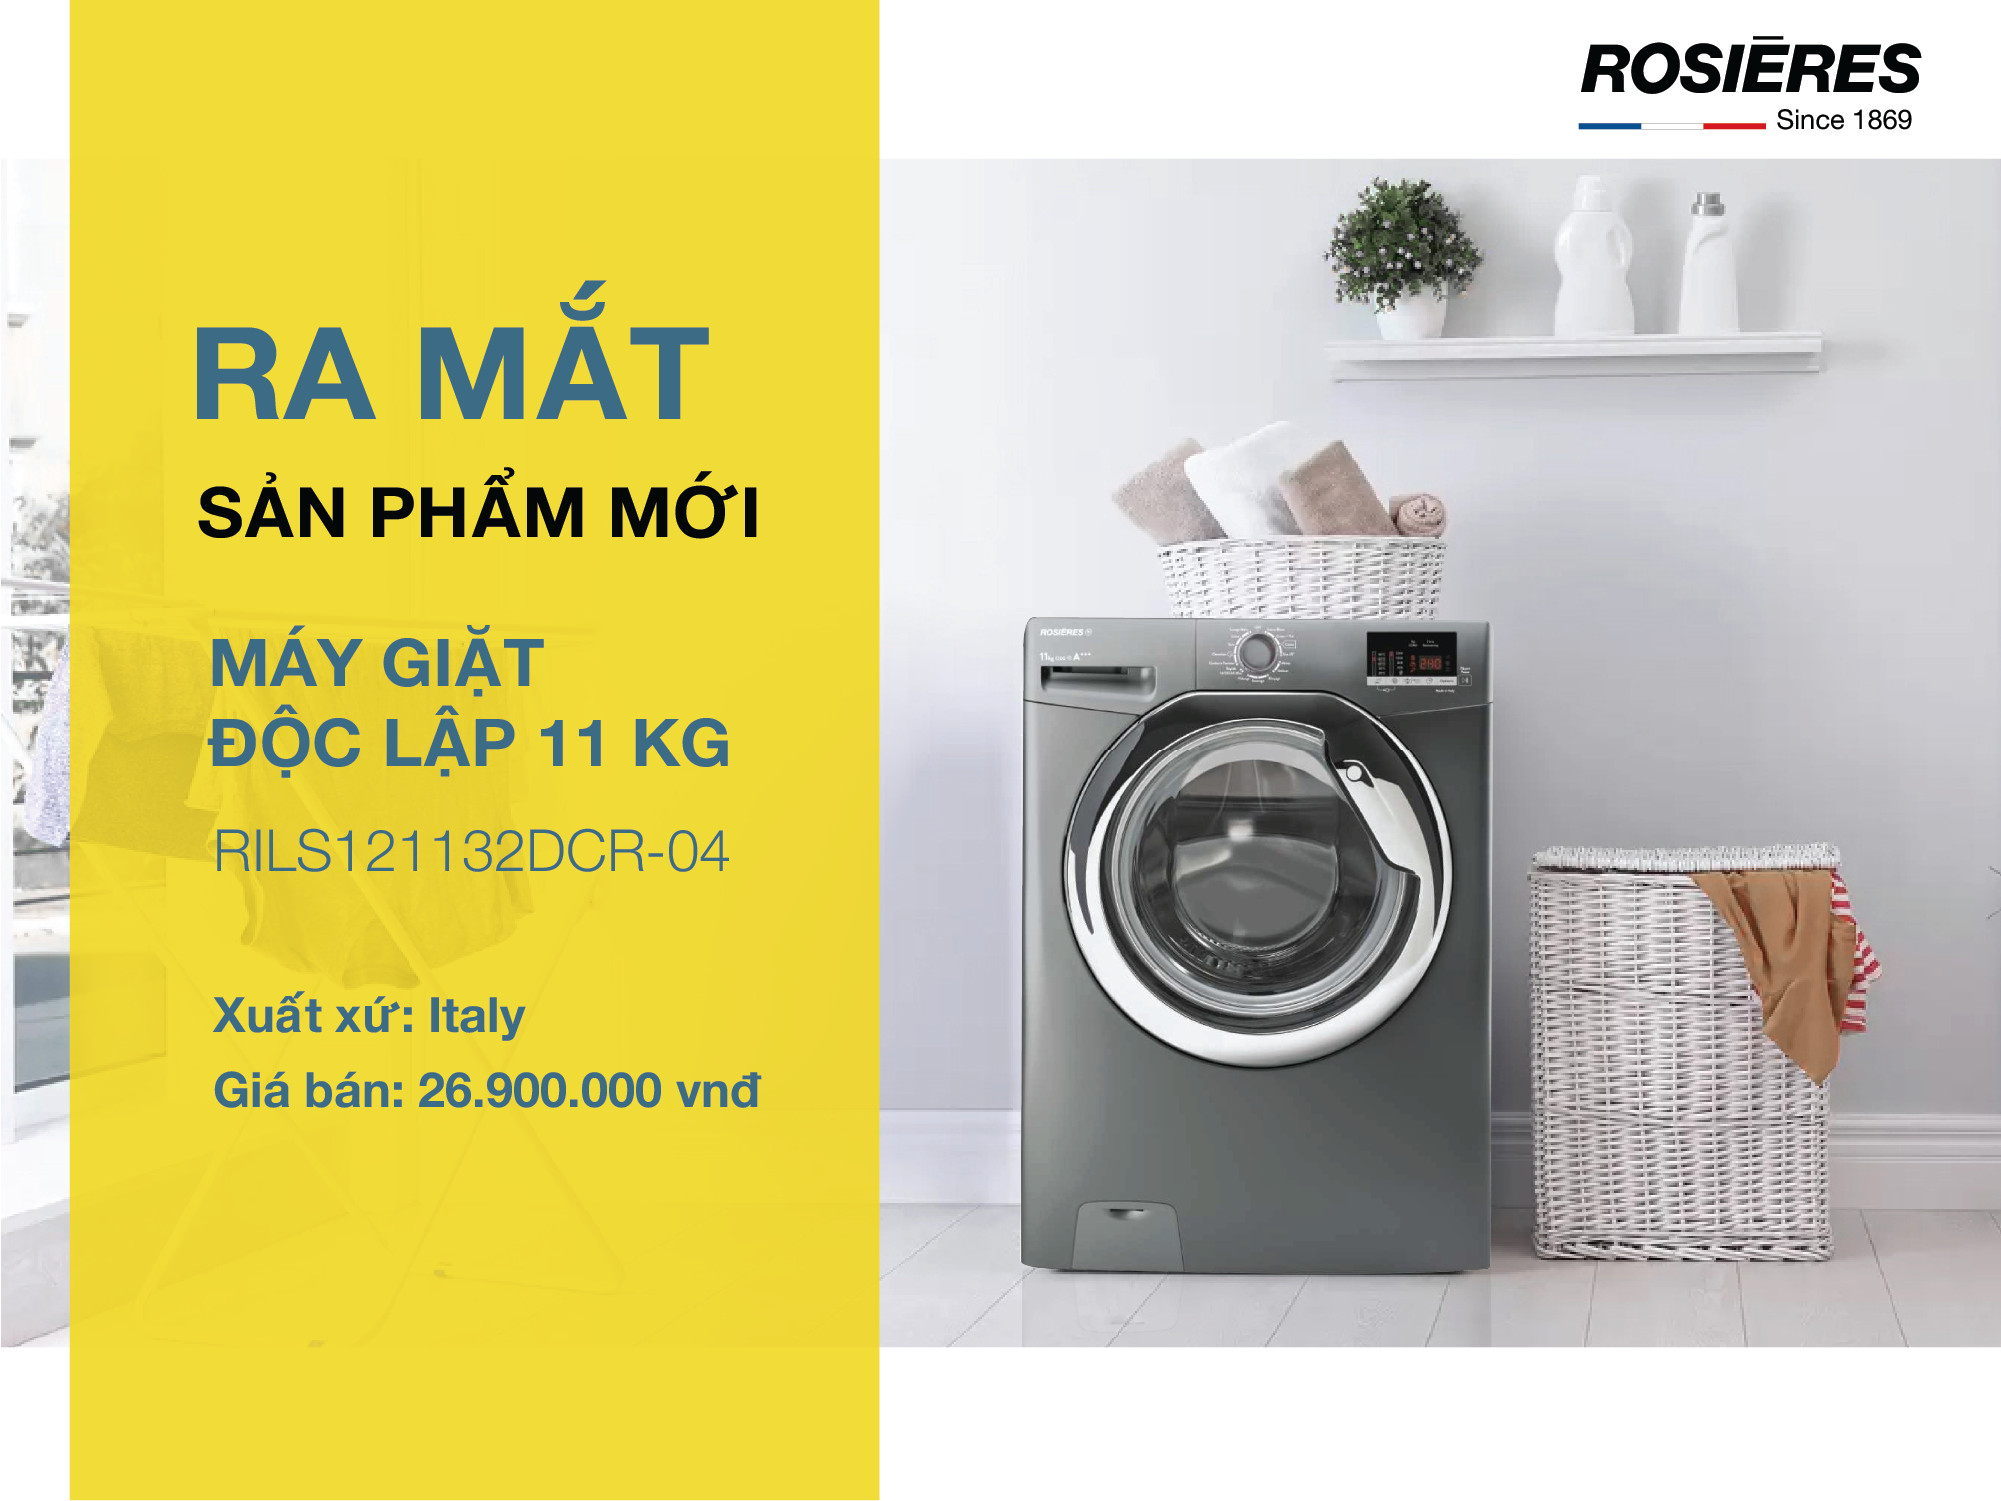 Rosieres ra mắt máy giặt độc lập RILS121132DCR-04 mới nhất 2022. Lồng giặt lớn 11kg, chức năng giặt hơi nước đặc biệt.